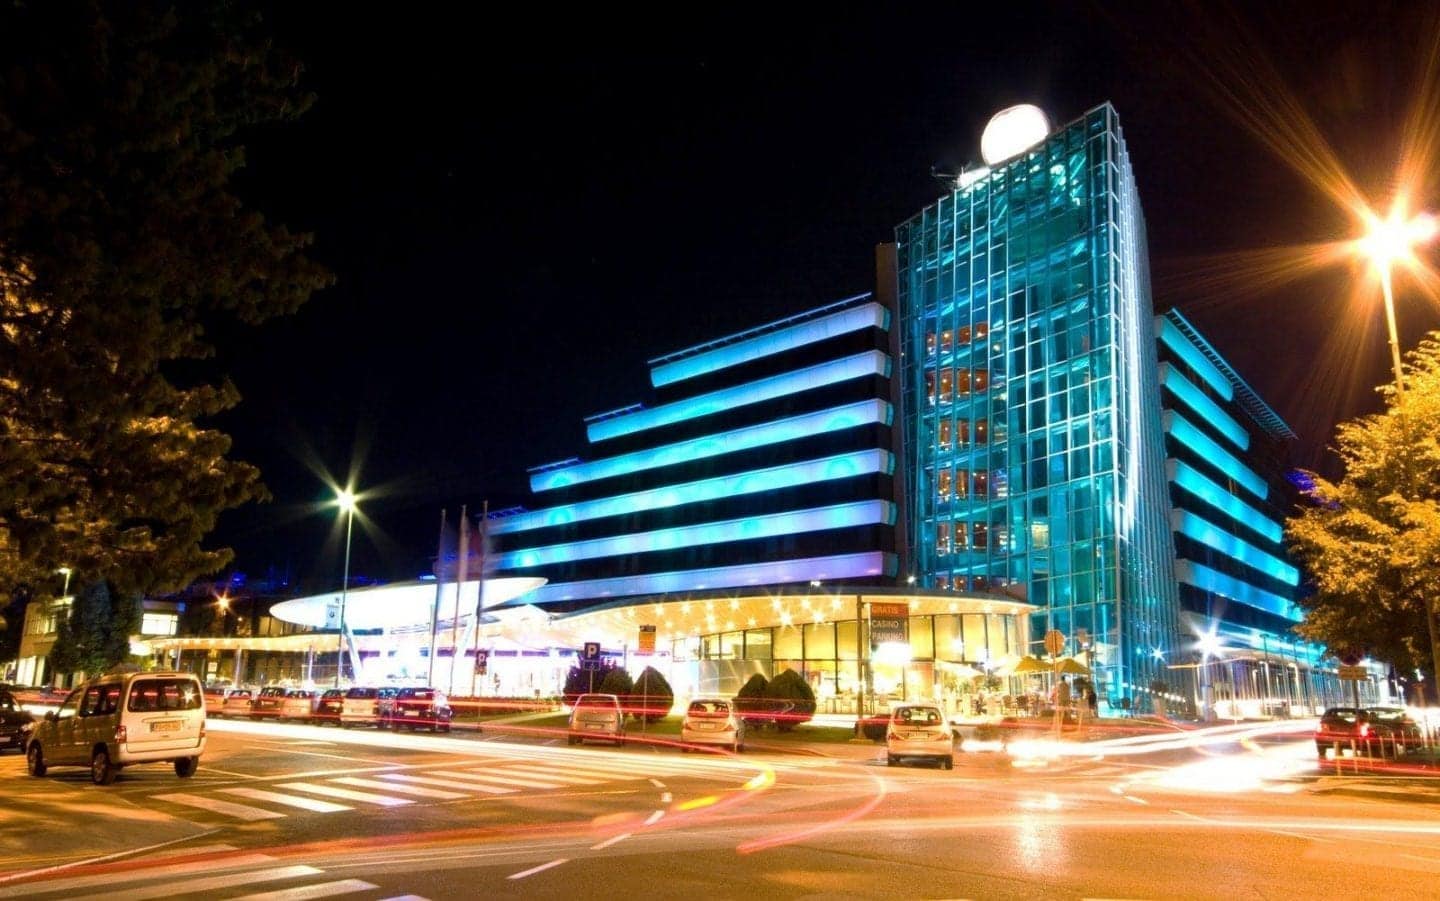 Guía de Nova Gorica Eslovenia, edificio moderno con muchas ventanas iluminadas de azul por la noche